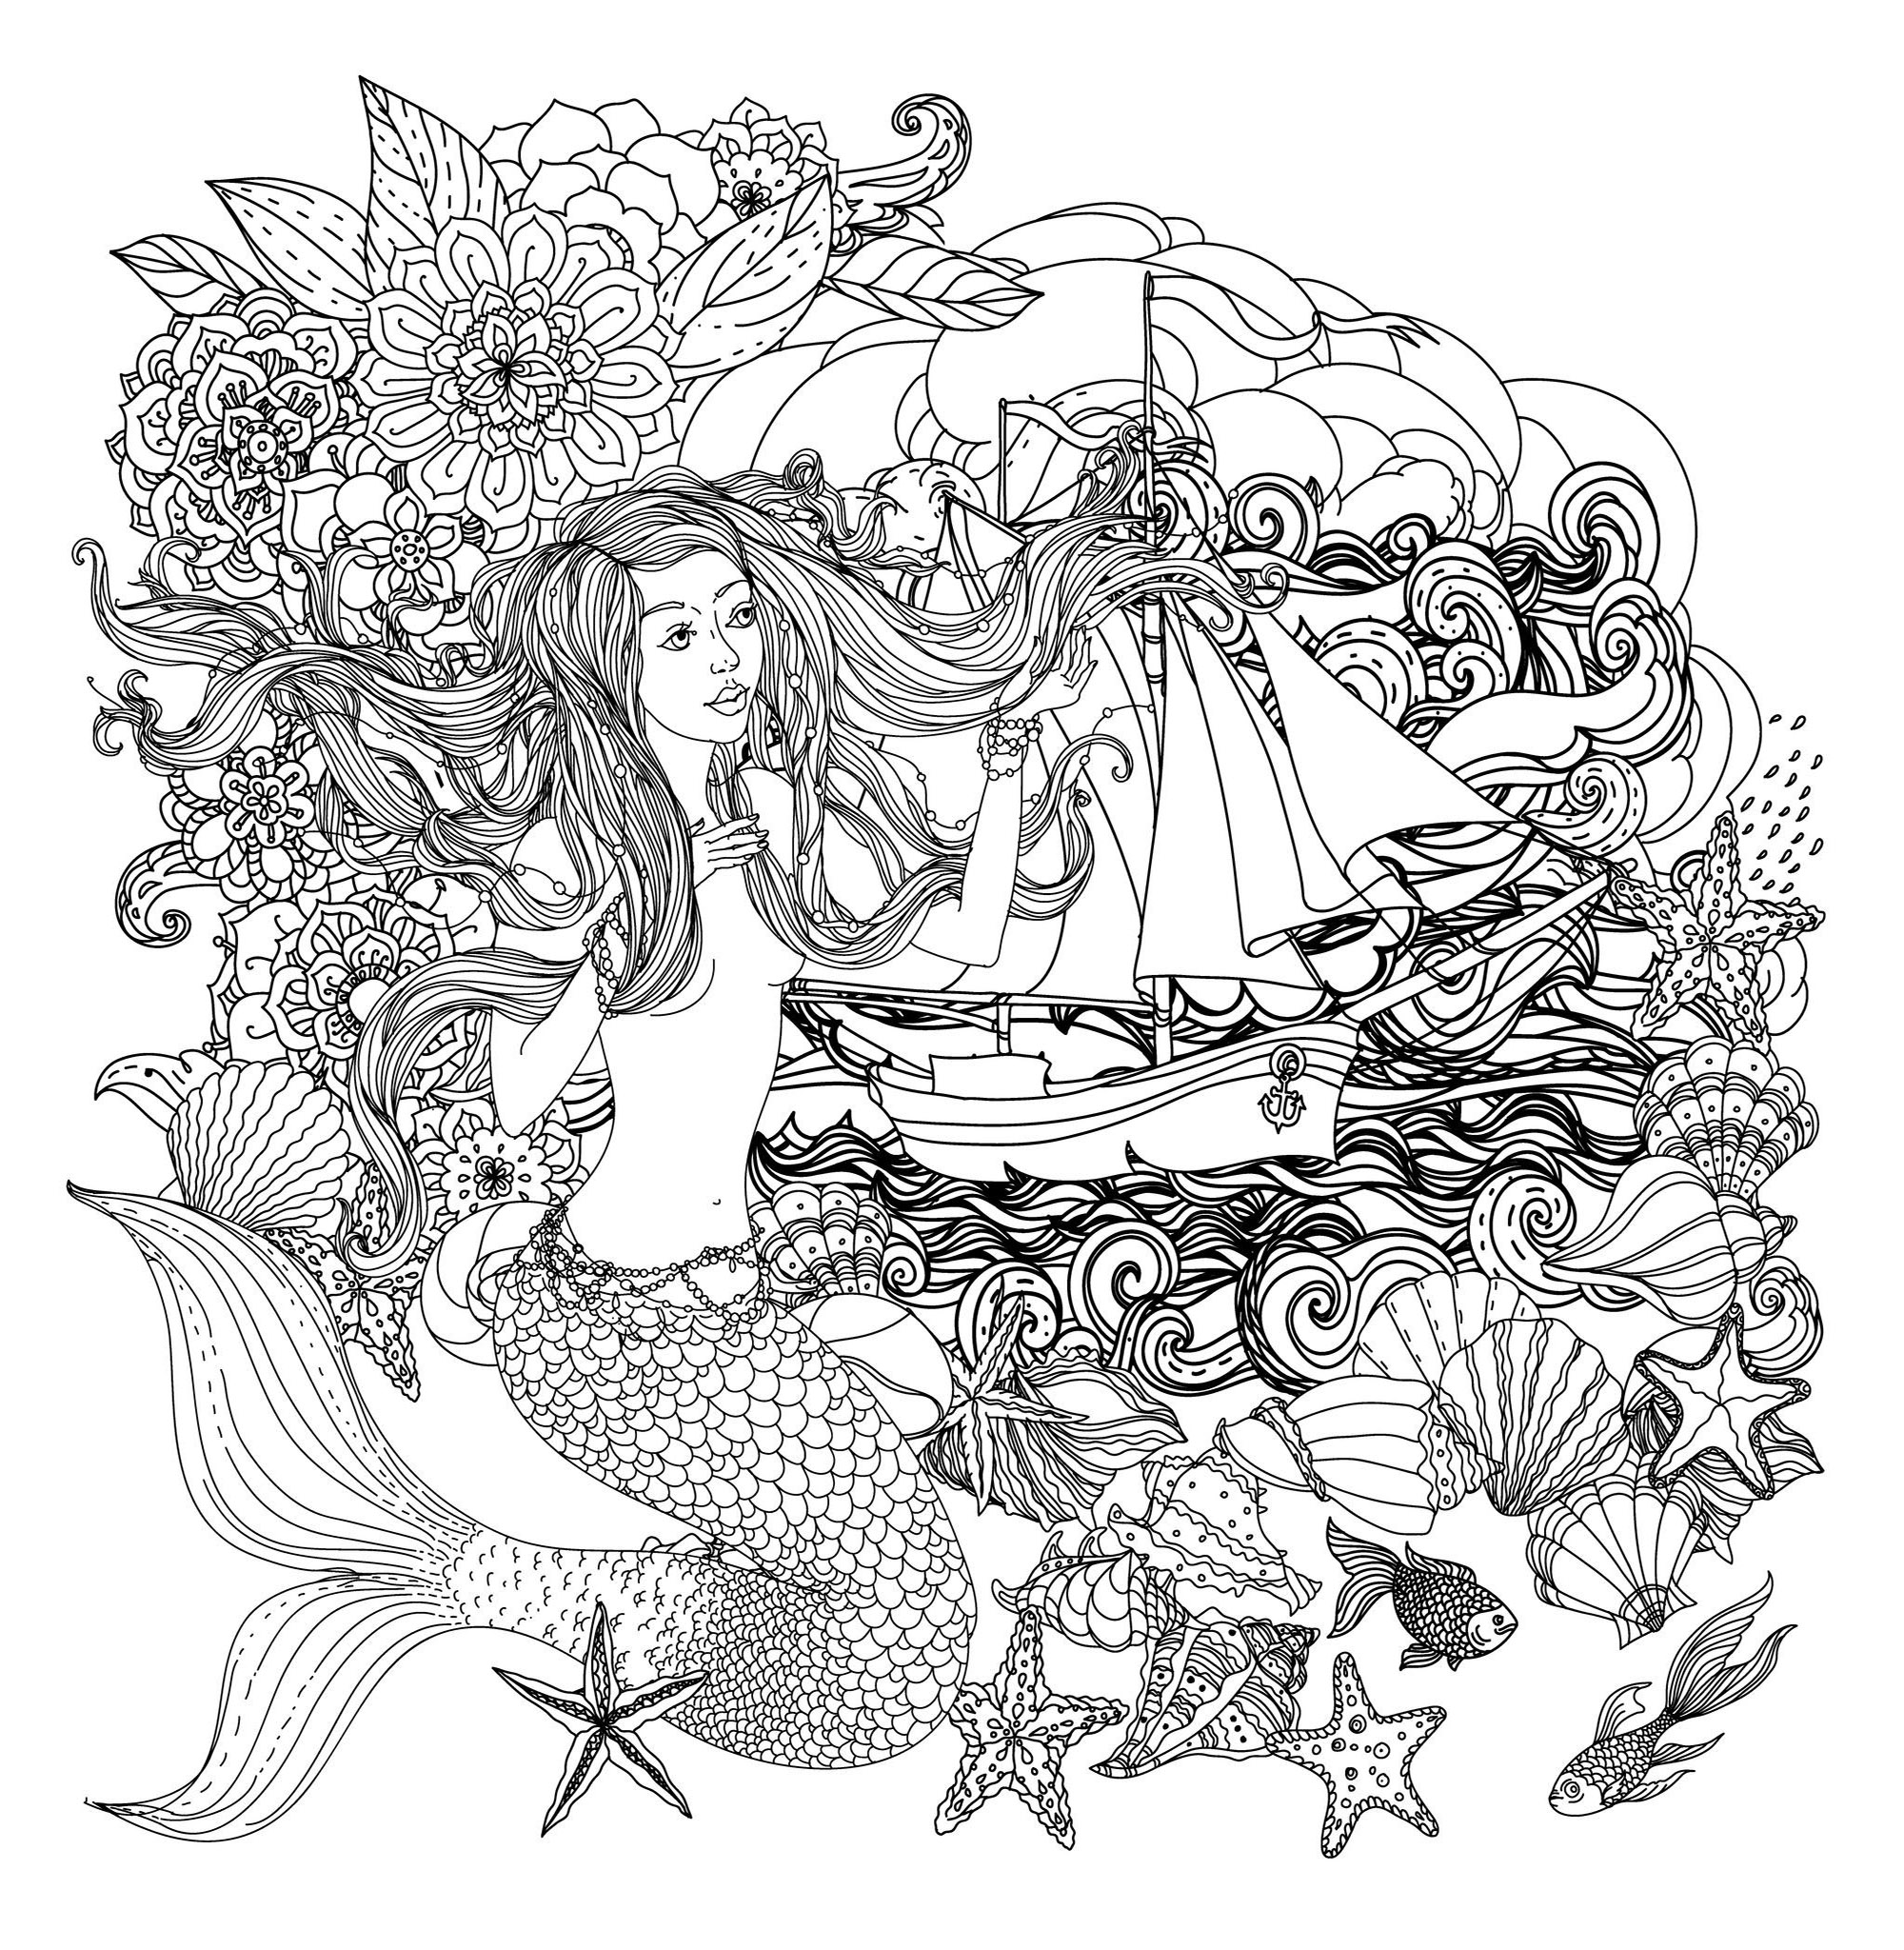 Sirène et bateau, et nombreux éléments marins à colorier, Source : 123rf   Artiste : Mashabr